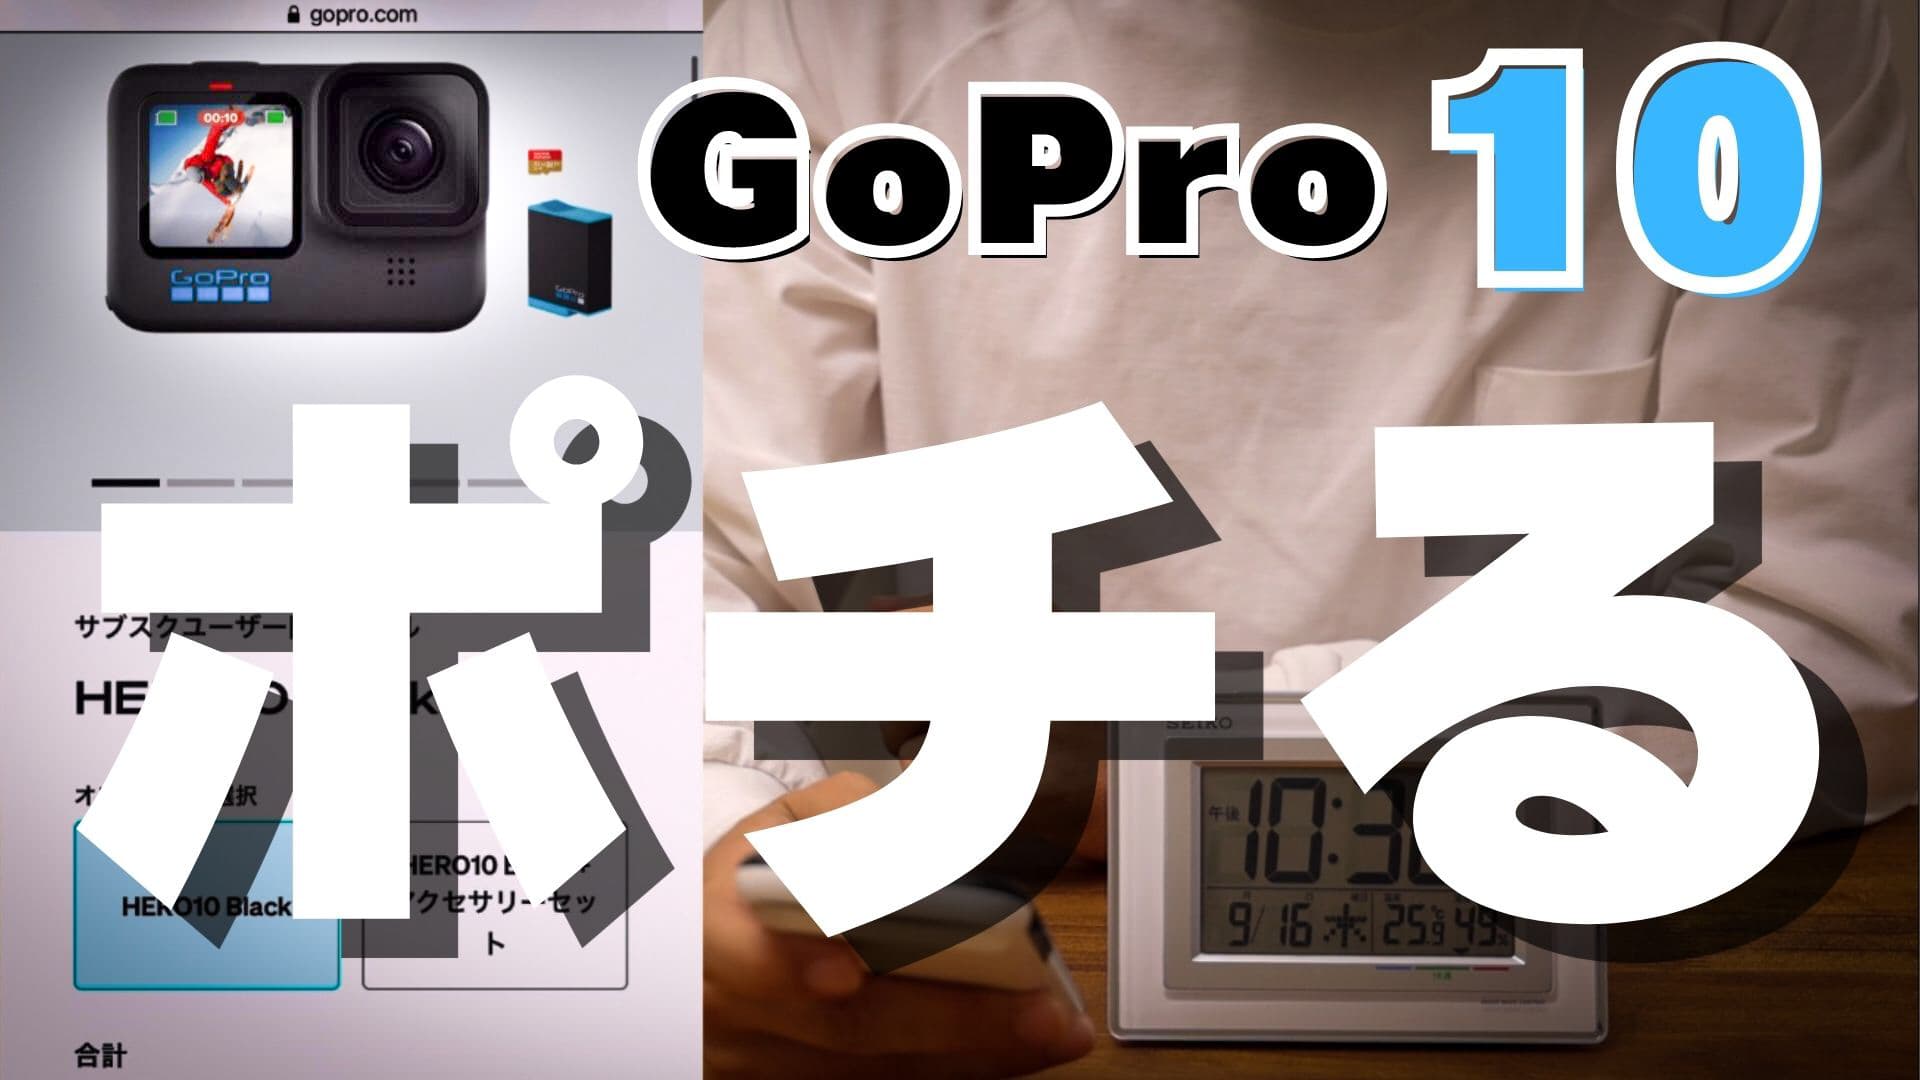 Gopro10を公式サイトで購入する手順と注意点【スマホで注文】 | はんか 